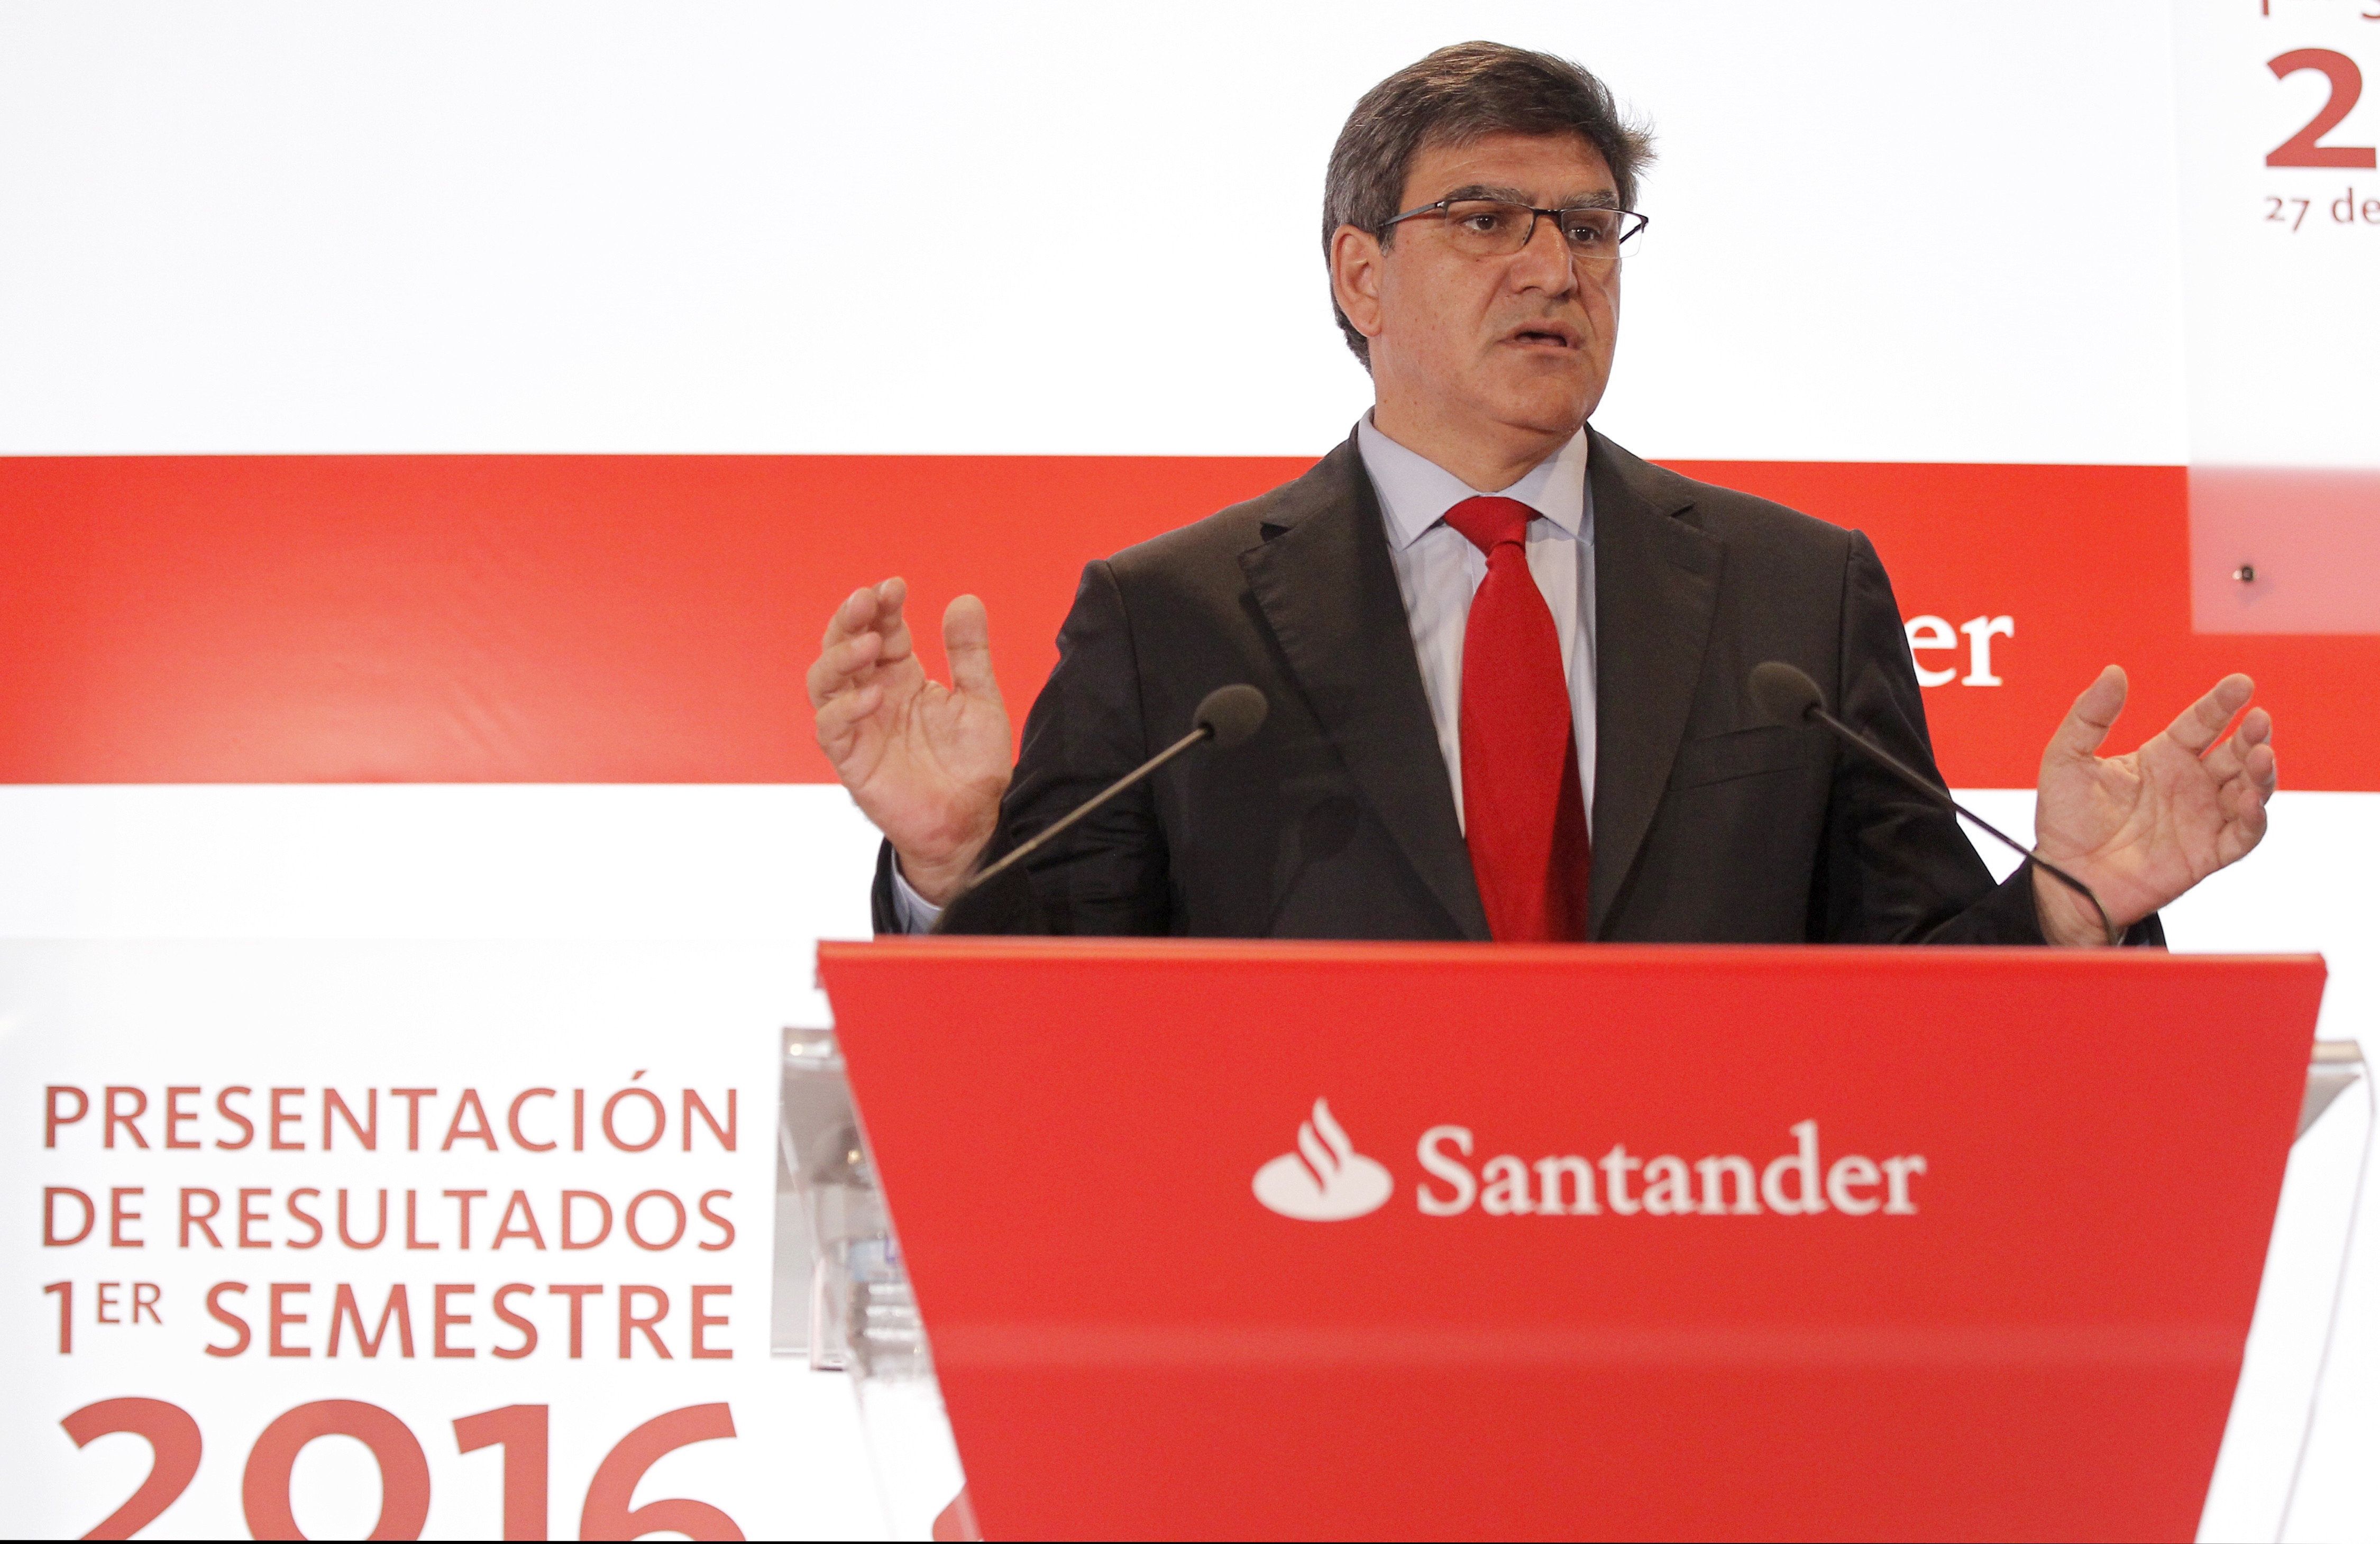 Banc Santander guanya 2.911 milions i demana un govern "estable"